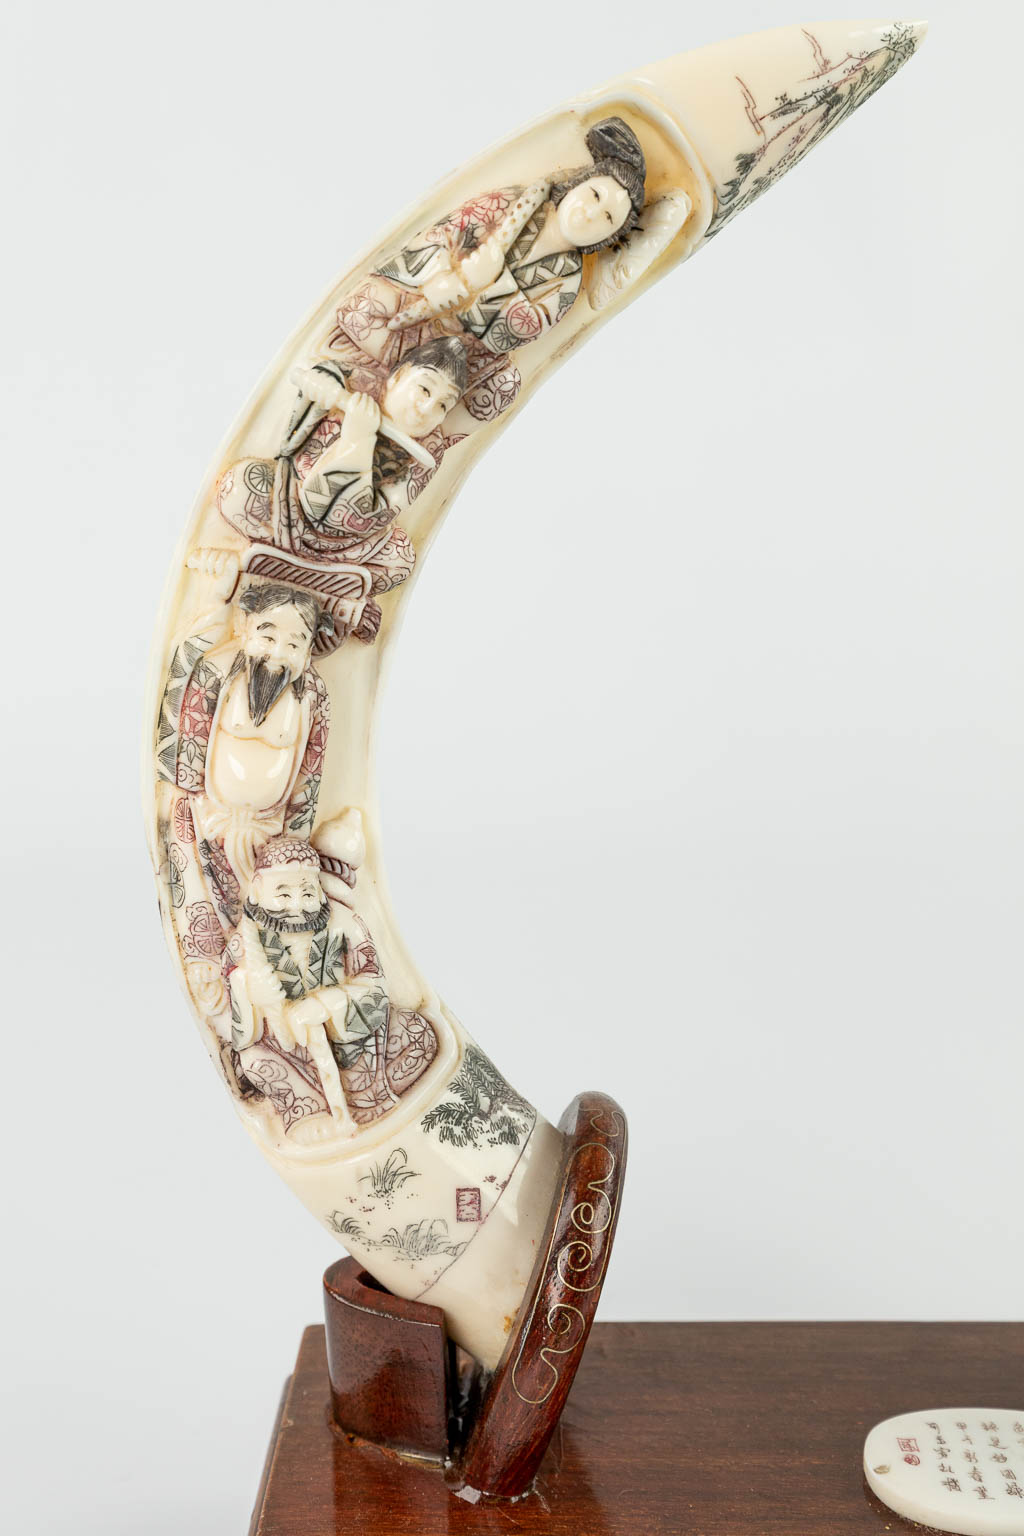 Een collectie van 2 gesculpteerde hoorns of been, gemonteerd in houten staander. (H:19cm)